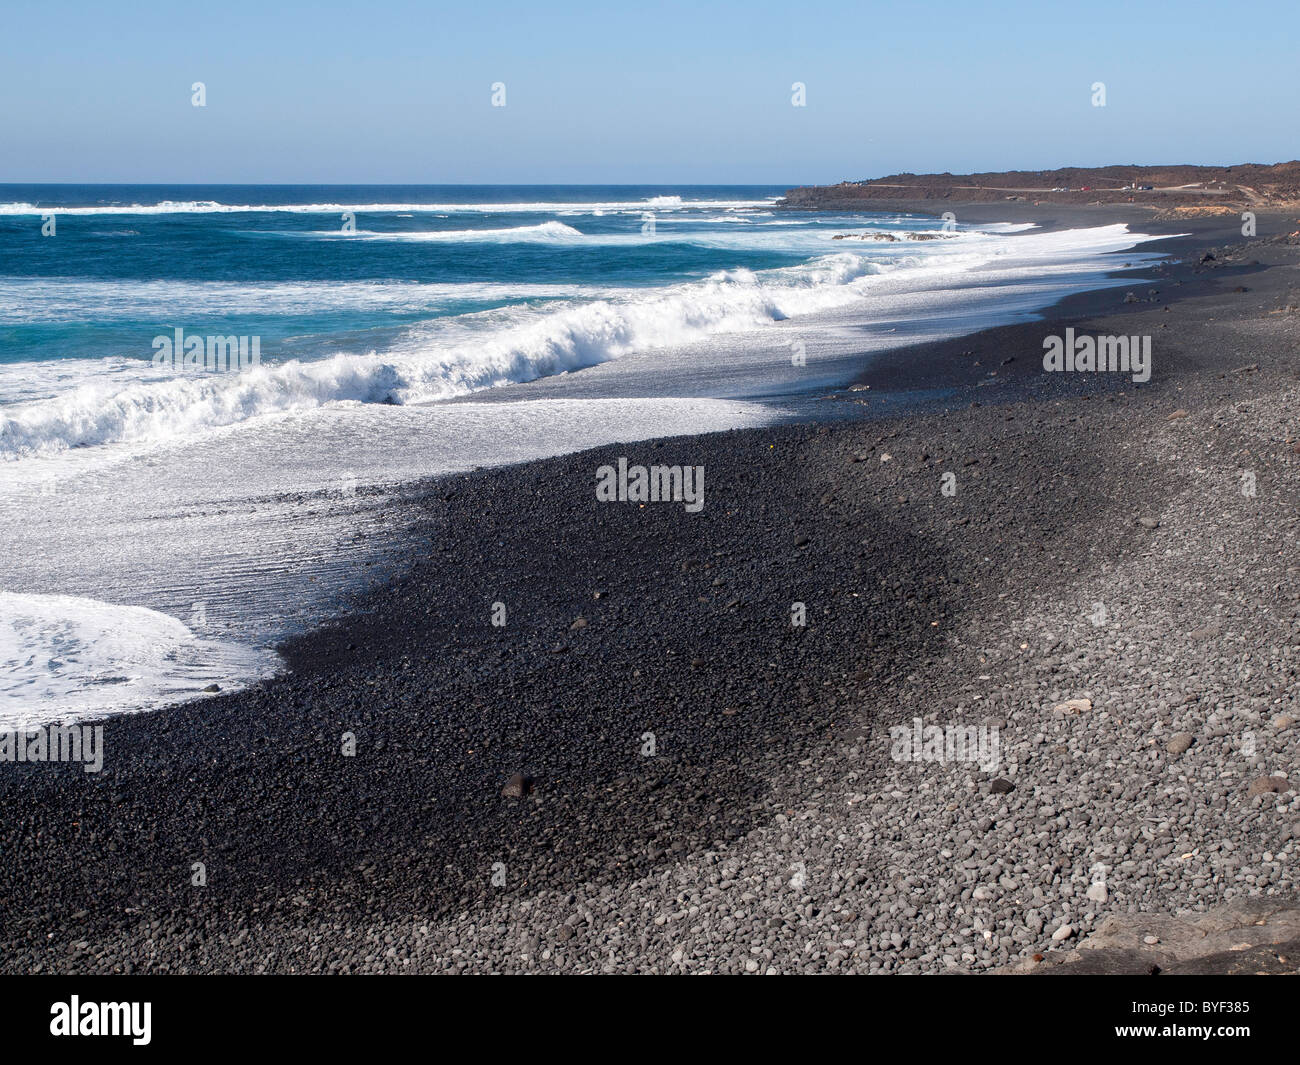 La Playa de Janubio subdesarrolladas salvaje playa de arena negra en la salvaje costa oeste de Lanzarote. Foto de stock